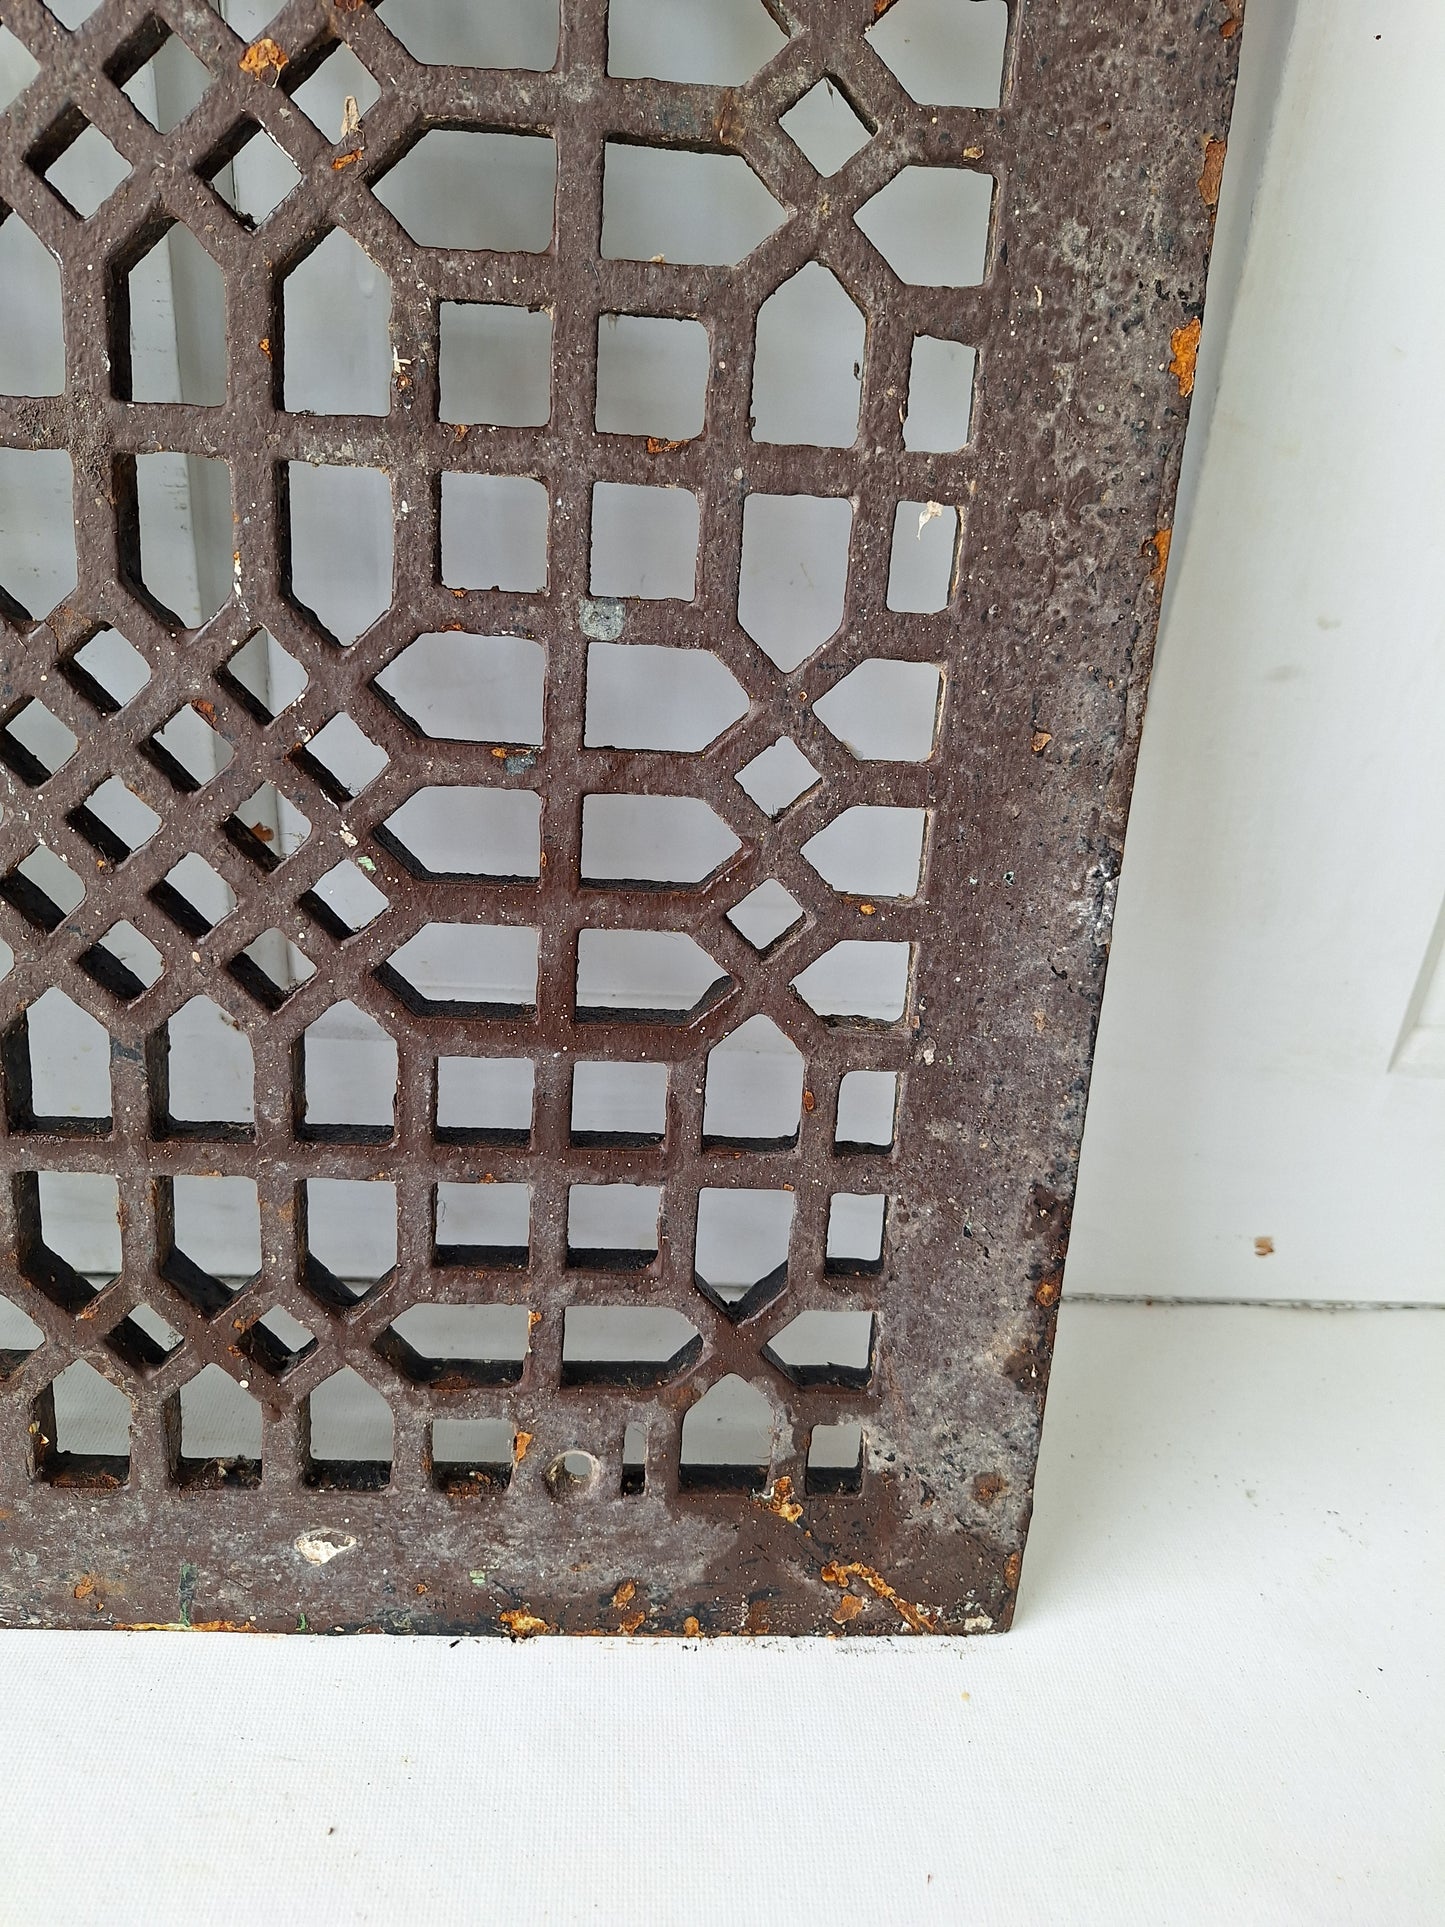 20 x 26 Antique Decorative Iron Floor Vent Cover, Black Iron Floor Grate #050701